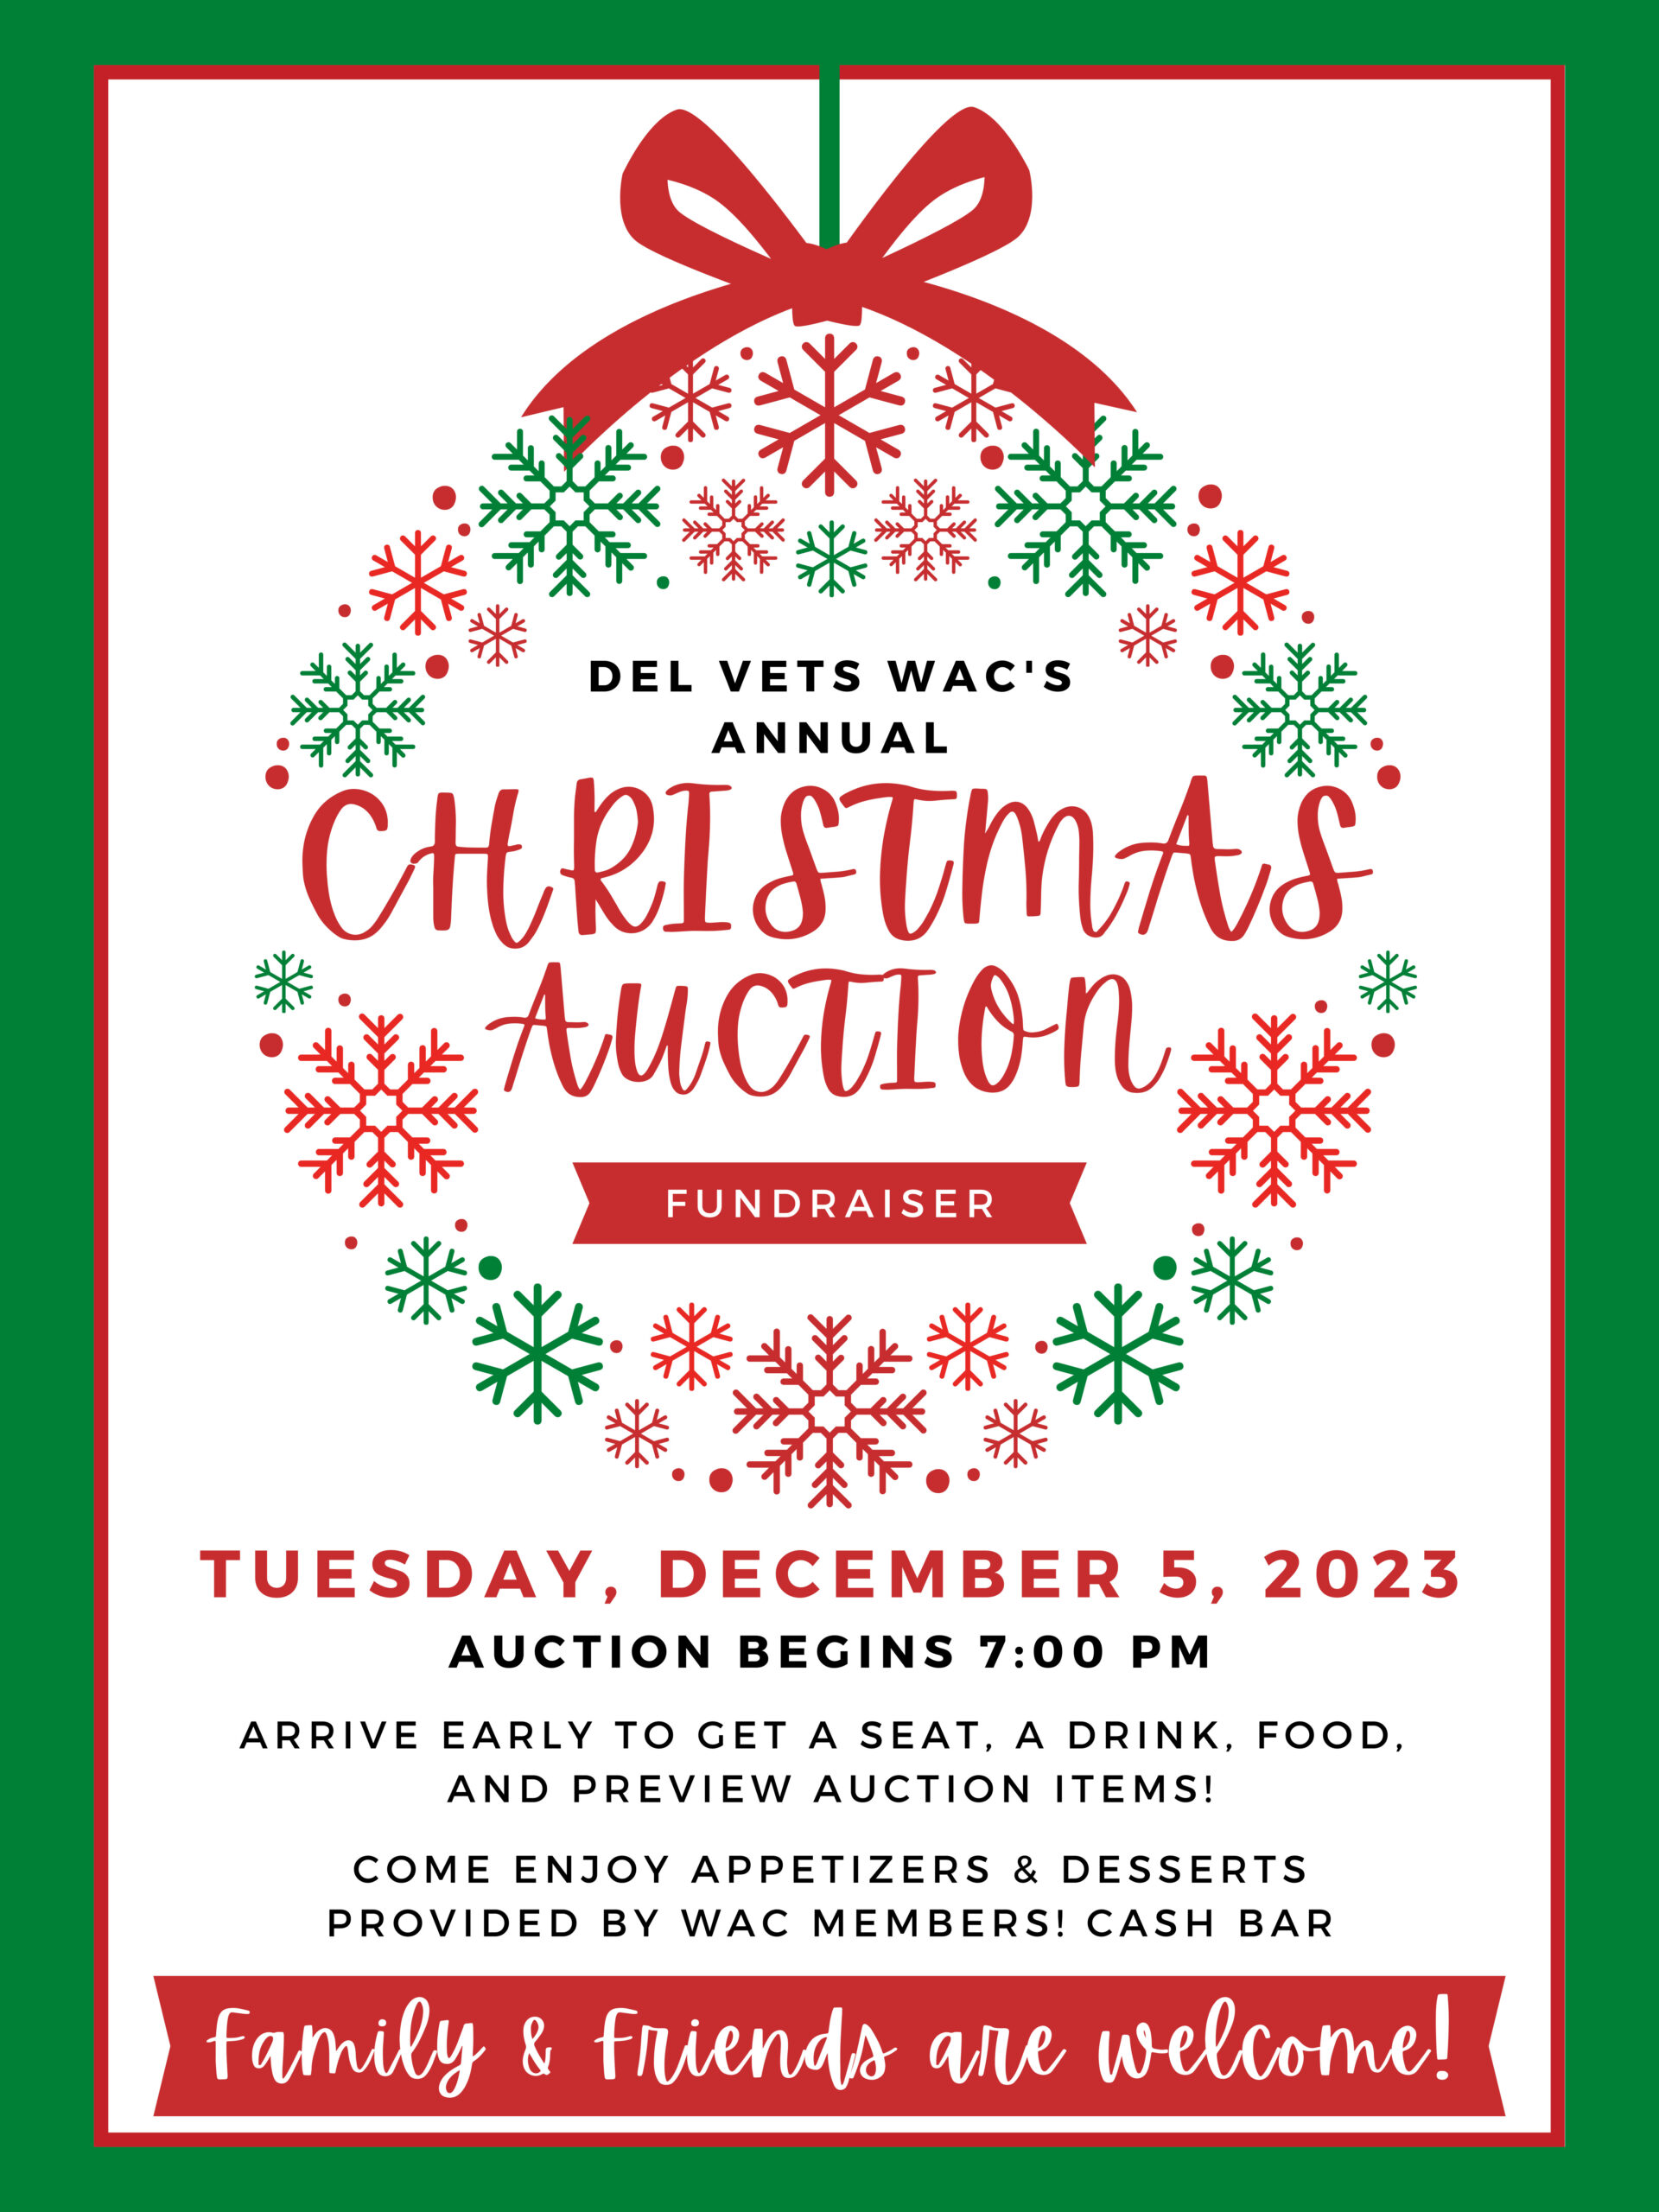 WACS Annual Christmas Auction Fundraiser